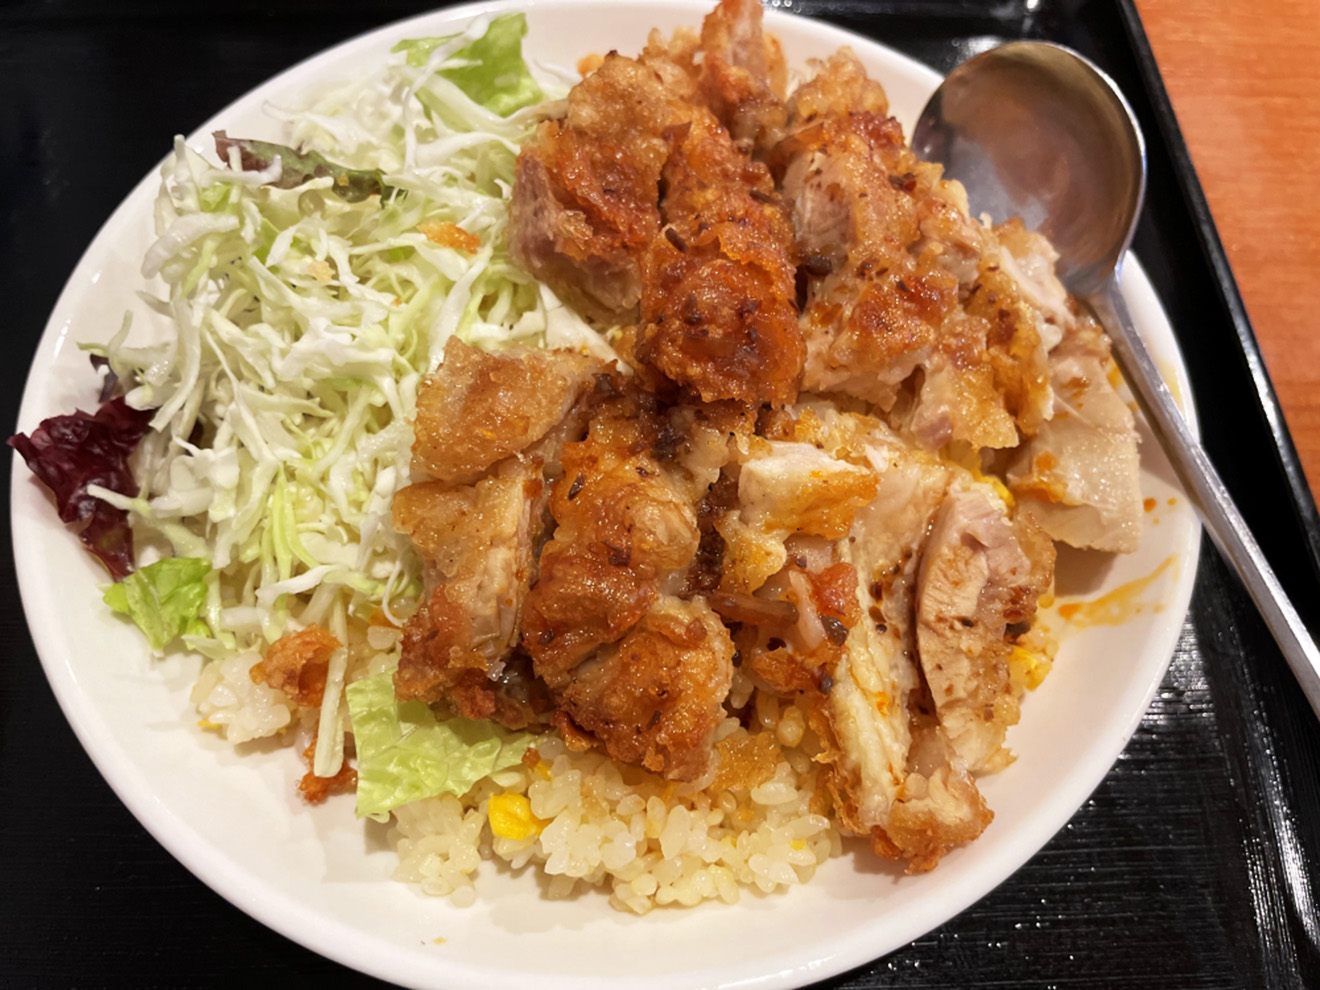 「中華ダイニング 郷味」の油淋鶏あんかけ炒飯